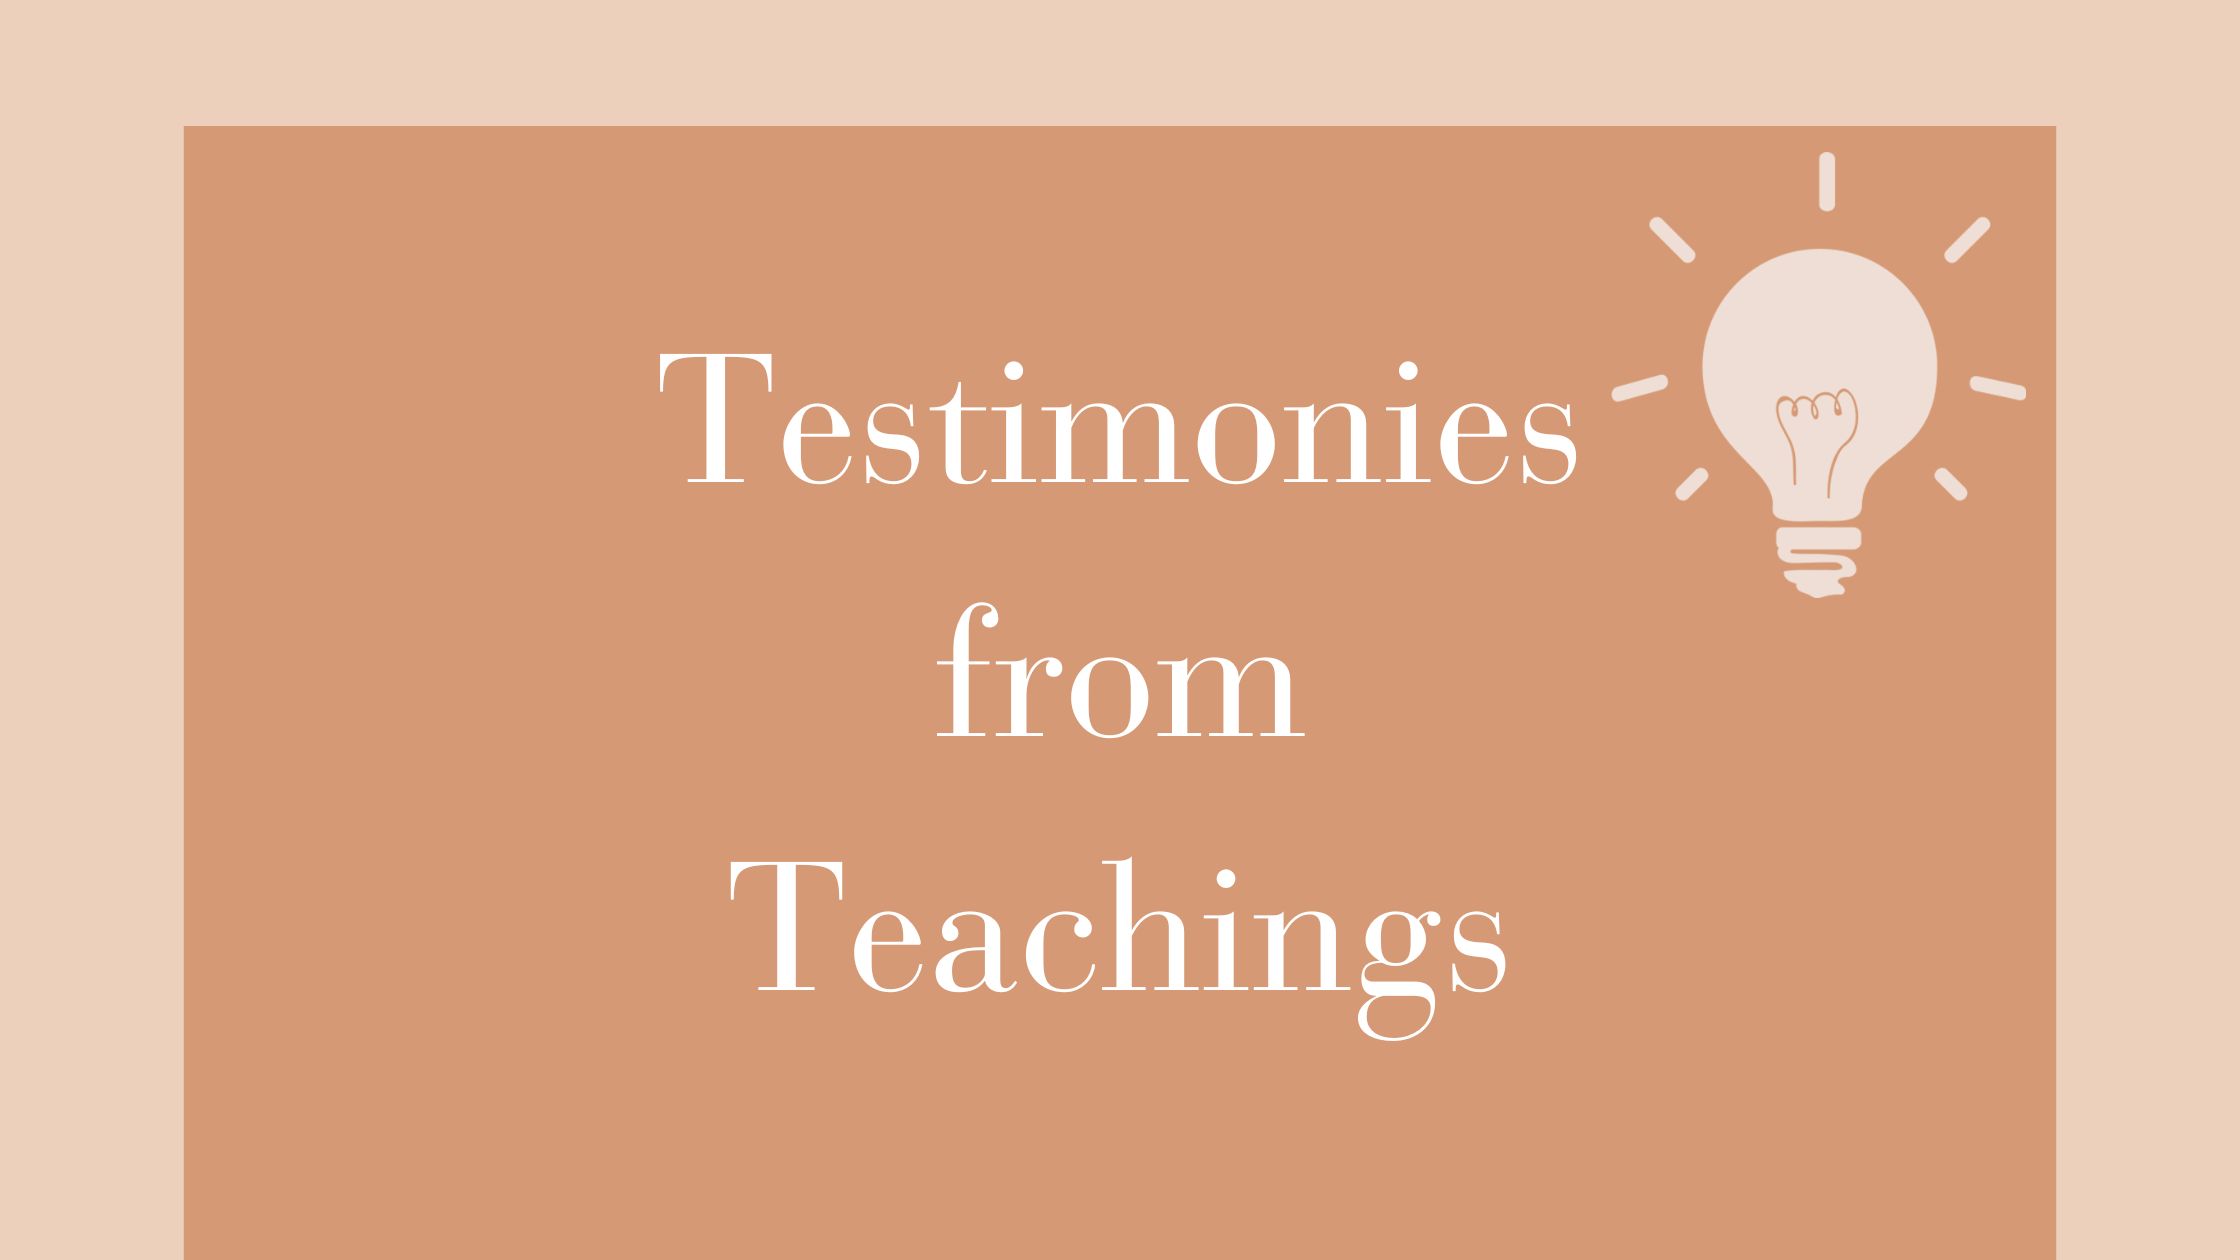 Testimonies From Teachings